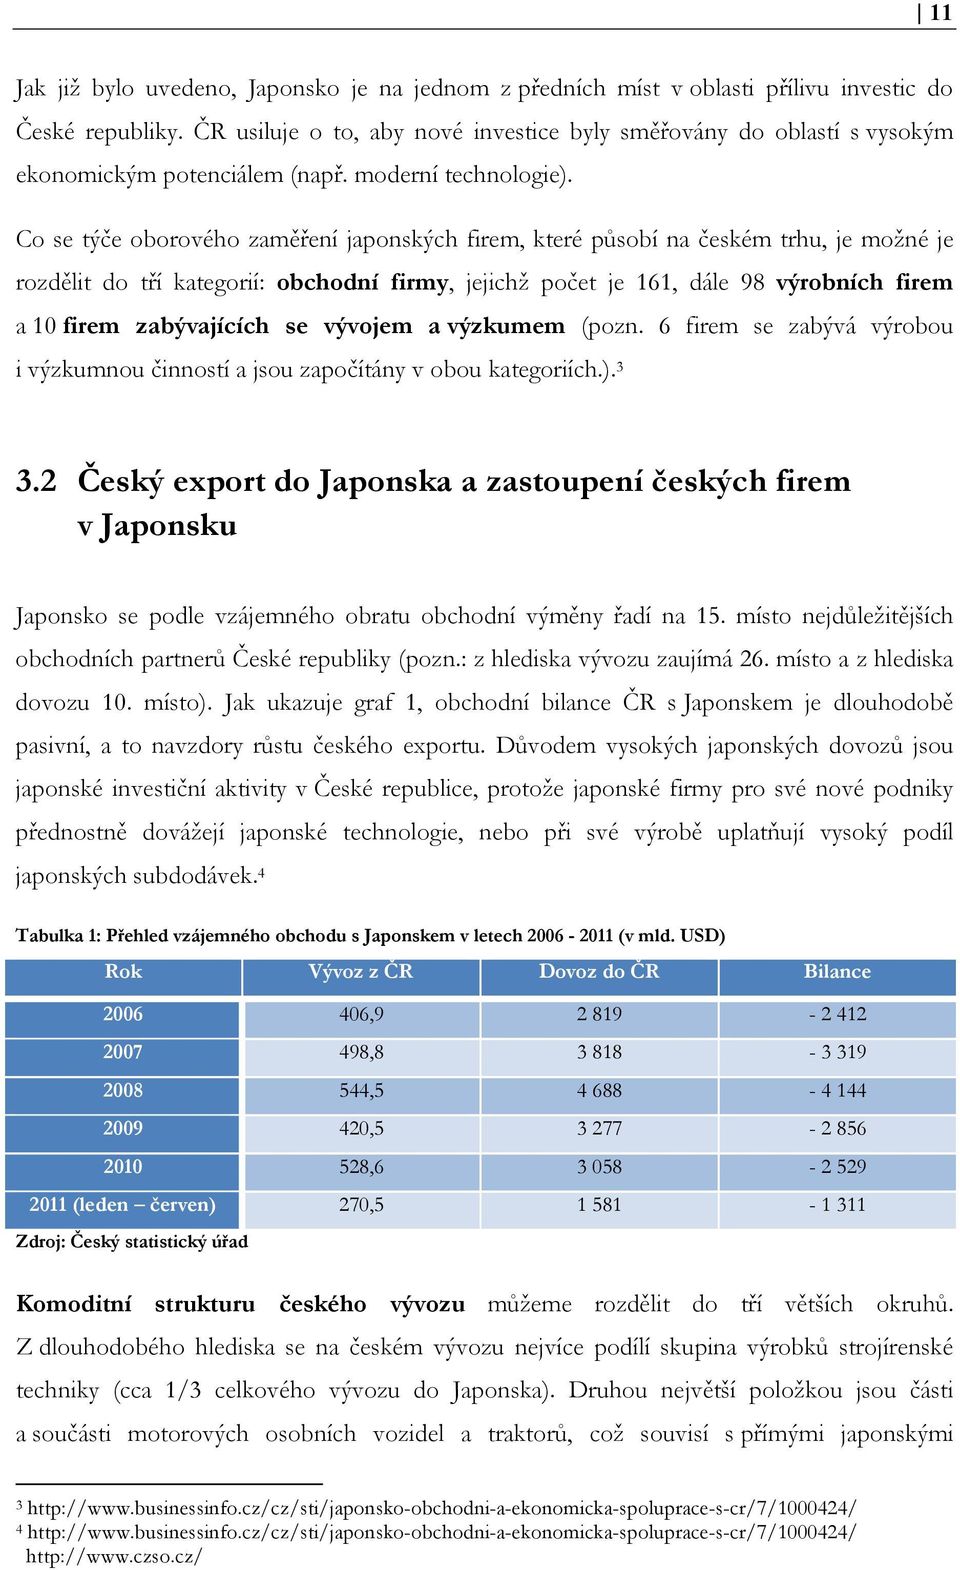 Co se týče oborového zaměření japonských firem, které působí na českém trhu, je možné je rozdělit do tří kategorií: obchodní firmy, jejichž počet je 161, dále 98 výrobních firem a 10 firem